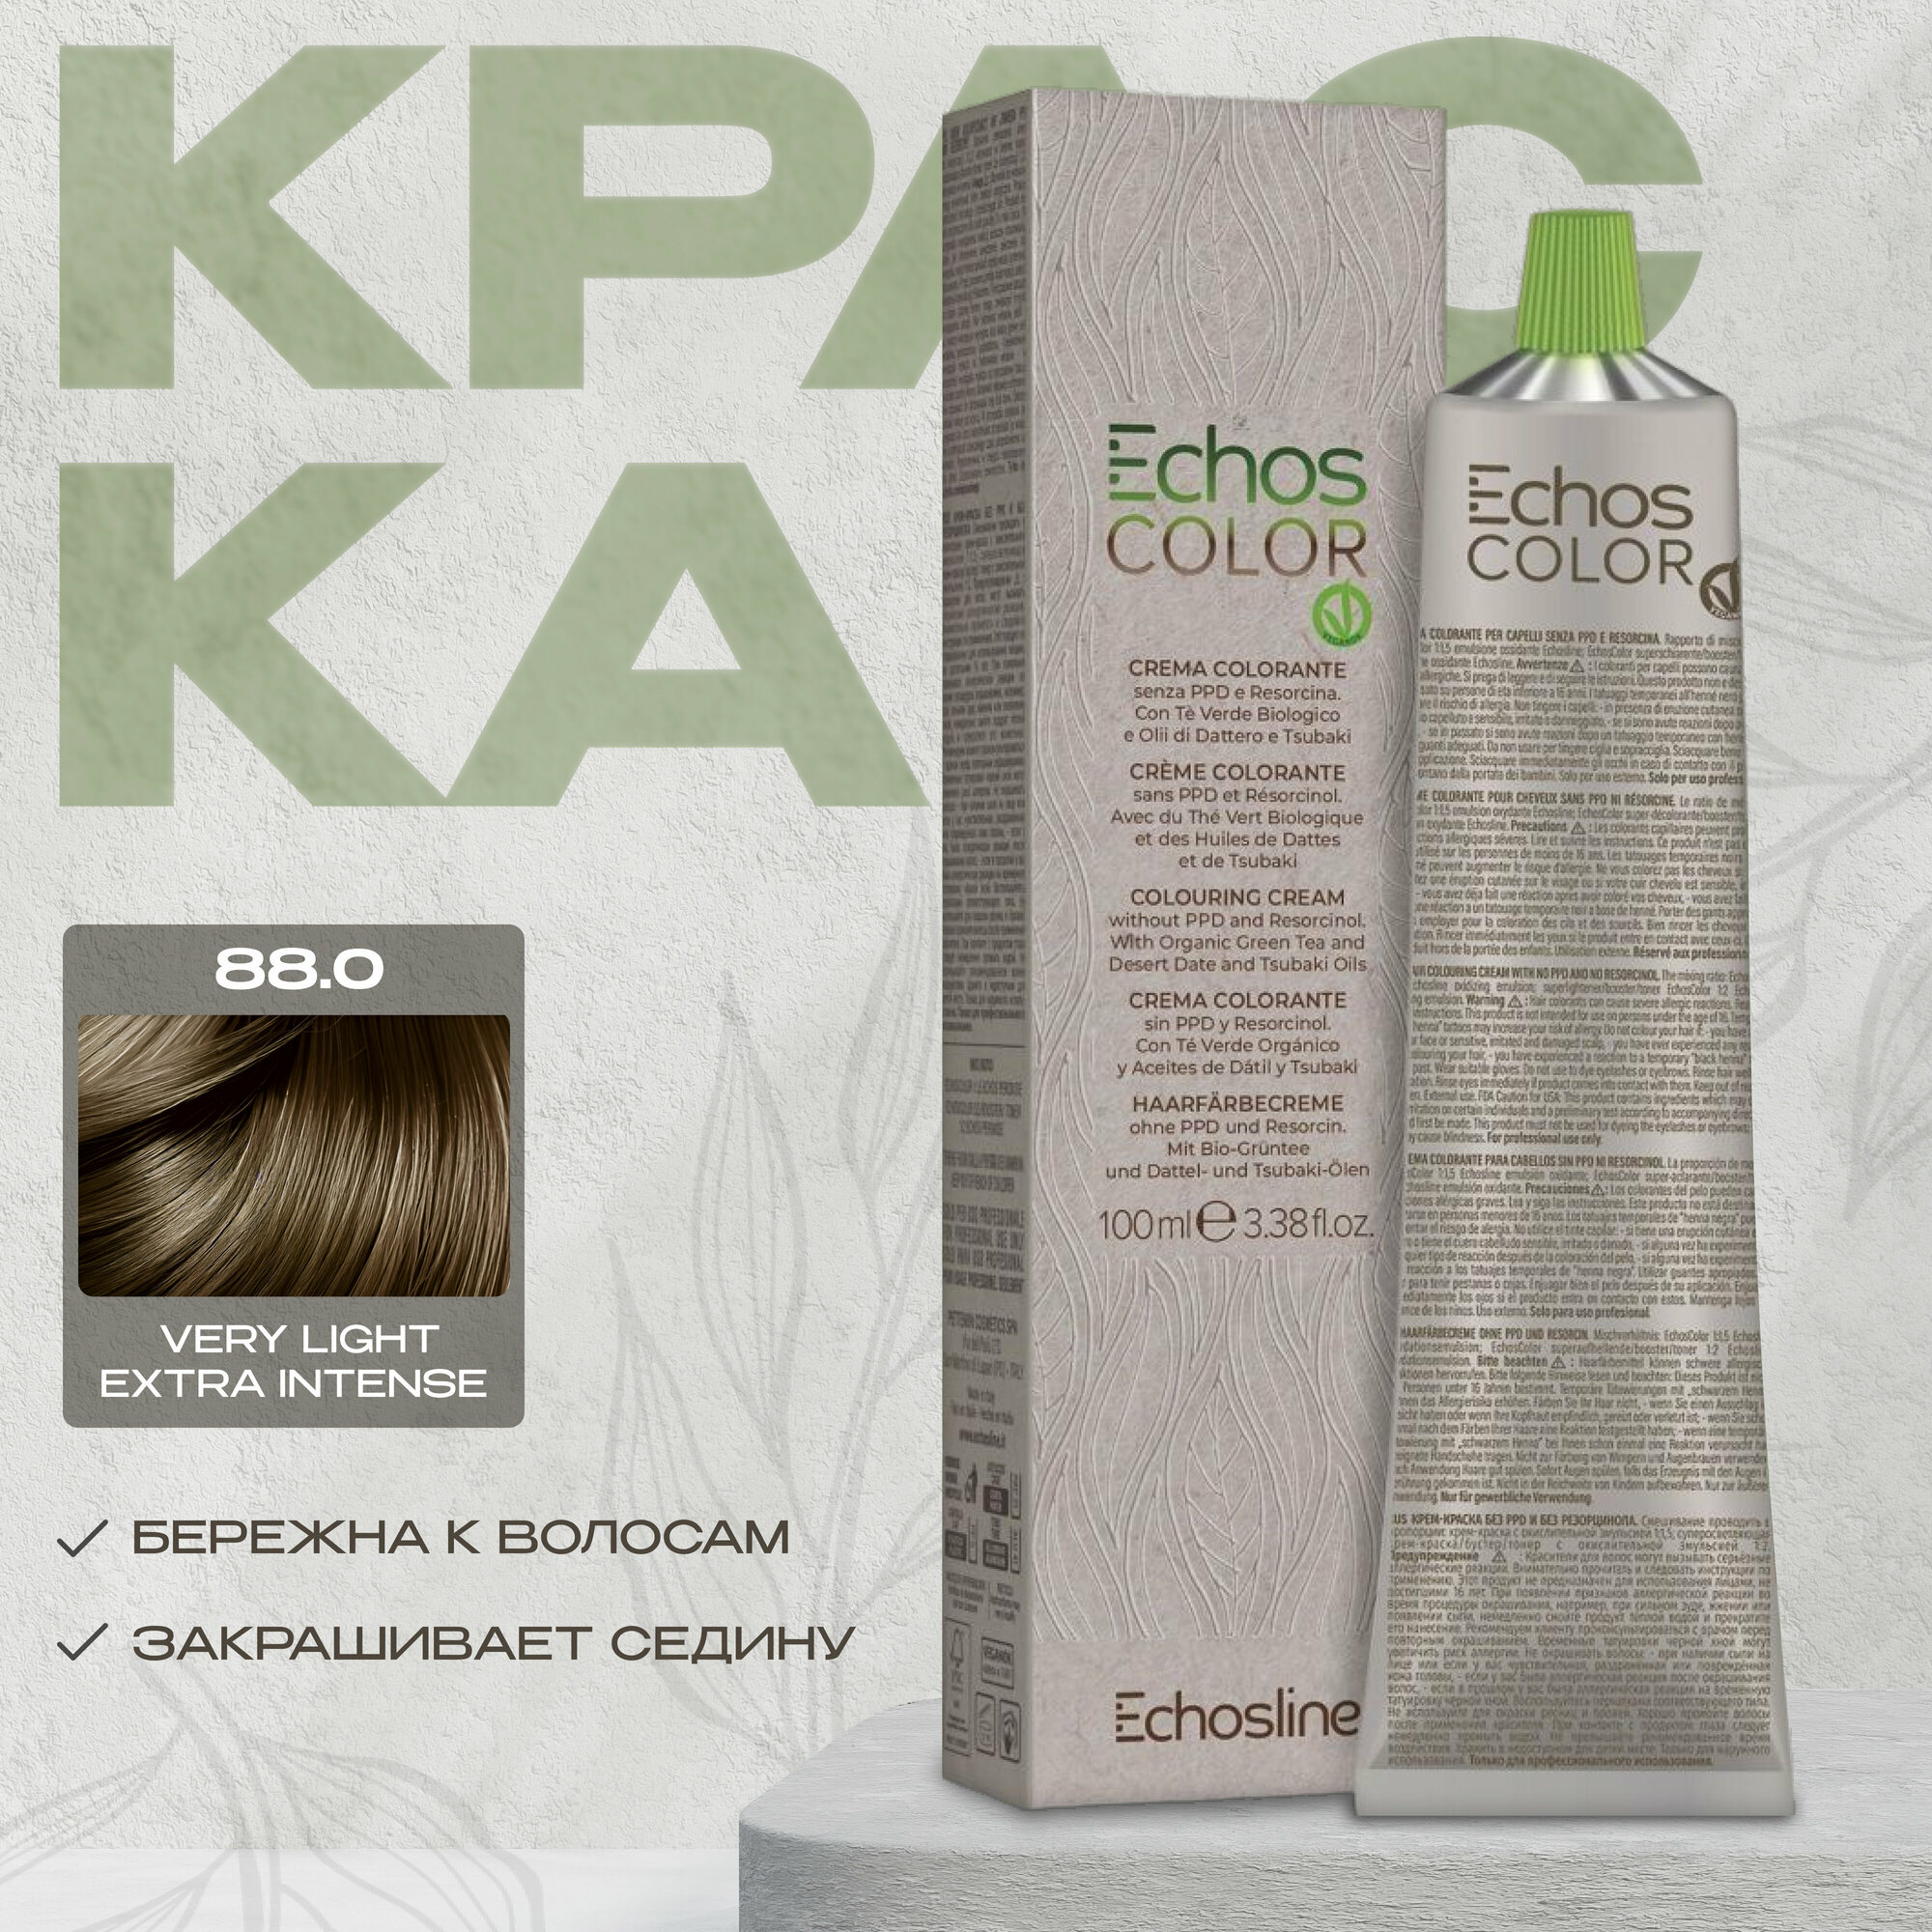 Echos Line Стойкая краска для волос 88.0 VERY LIGHT EXTRA INTENSE 100 мл echos color